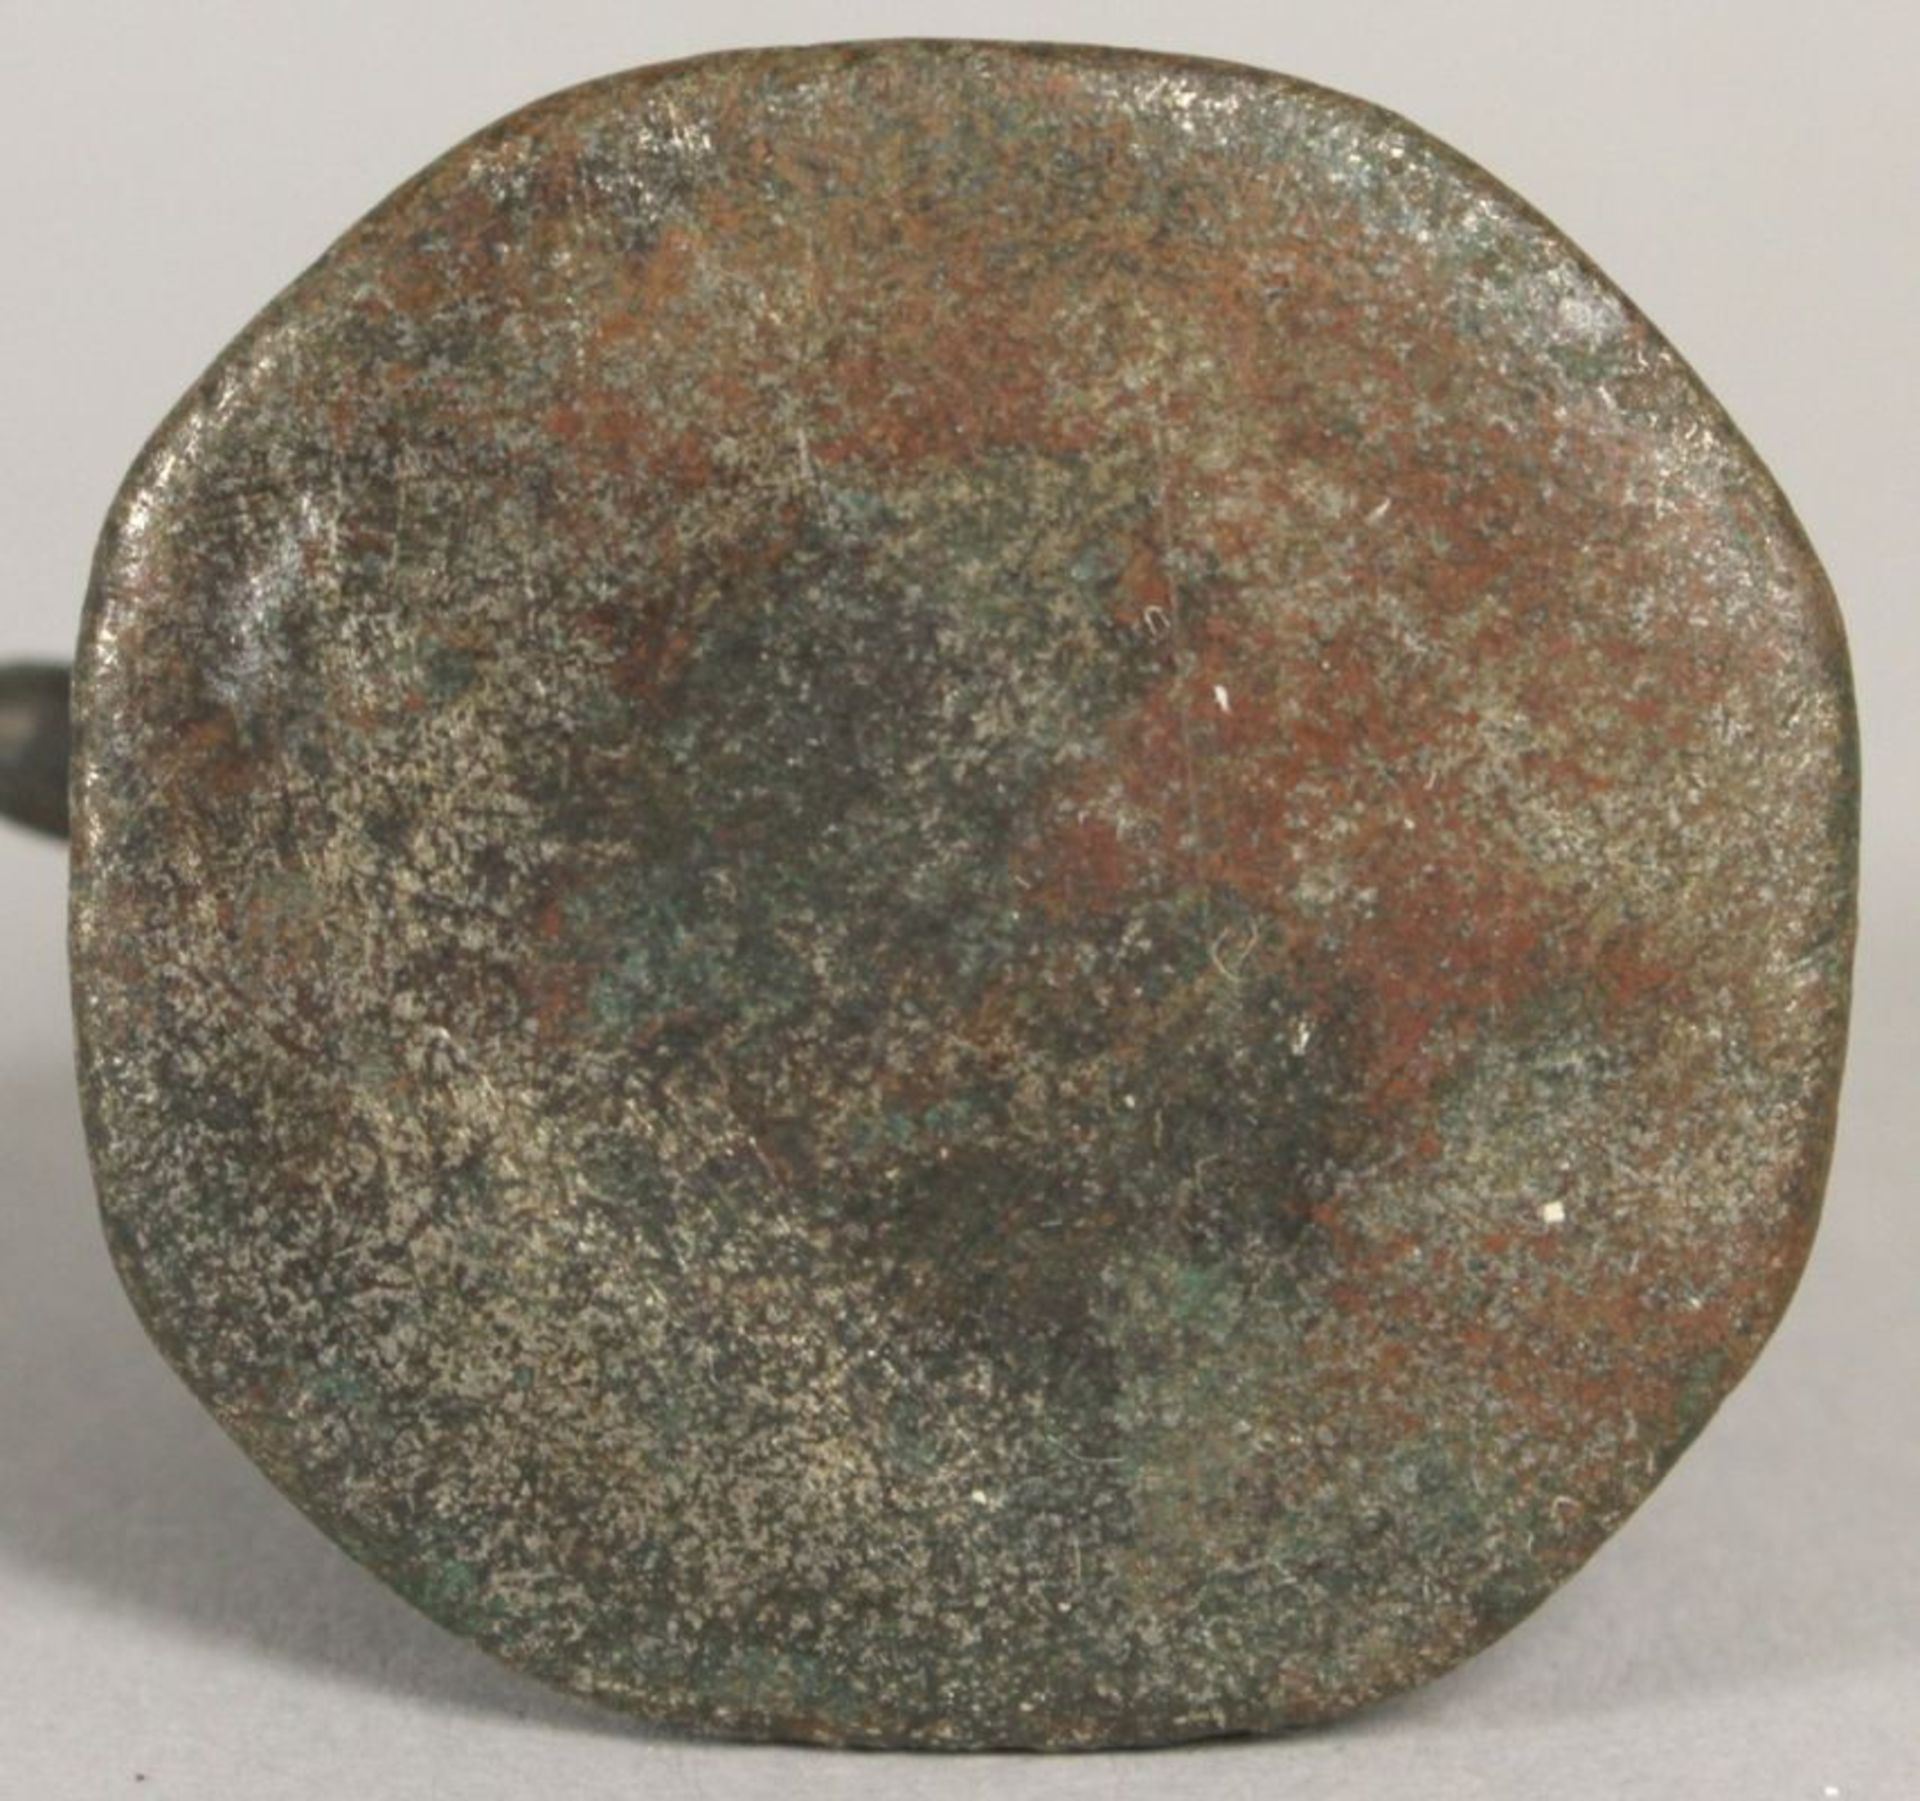 Bronze-Opiumgewicht, Burma, 18. Jh., gearbeitet in Form von Löwe auf Sockel, dunkleAlterspatina - Bild 2 aus 2